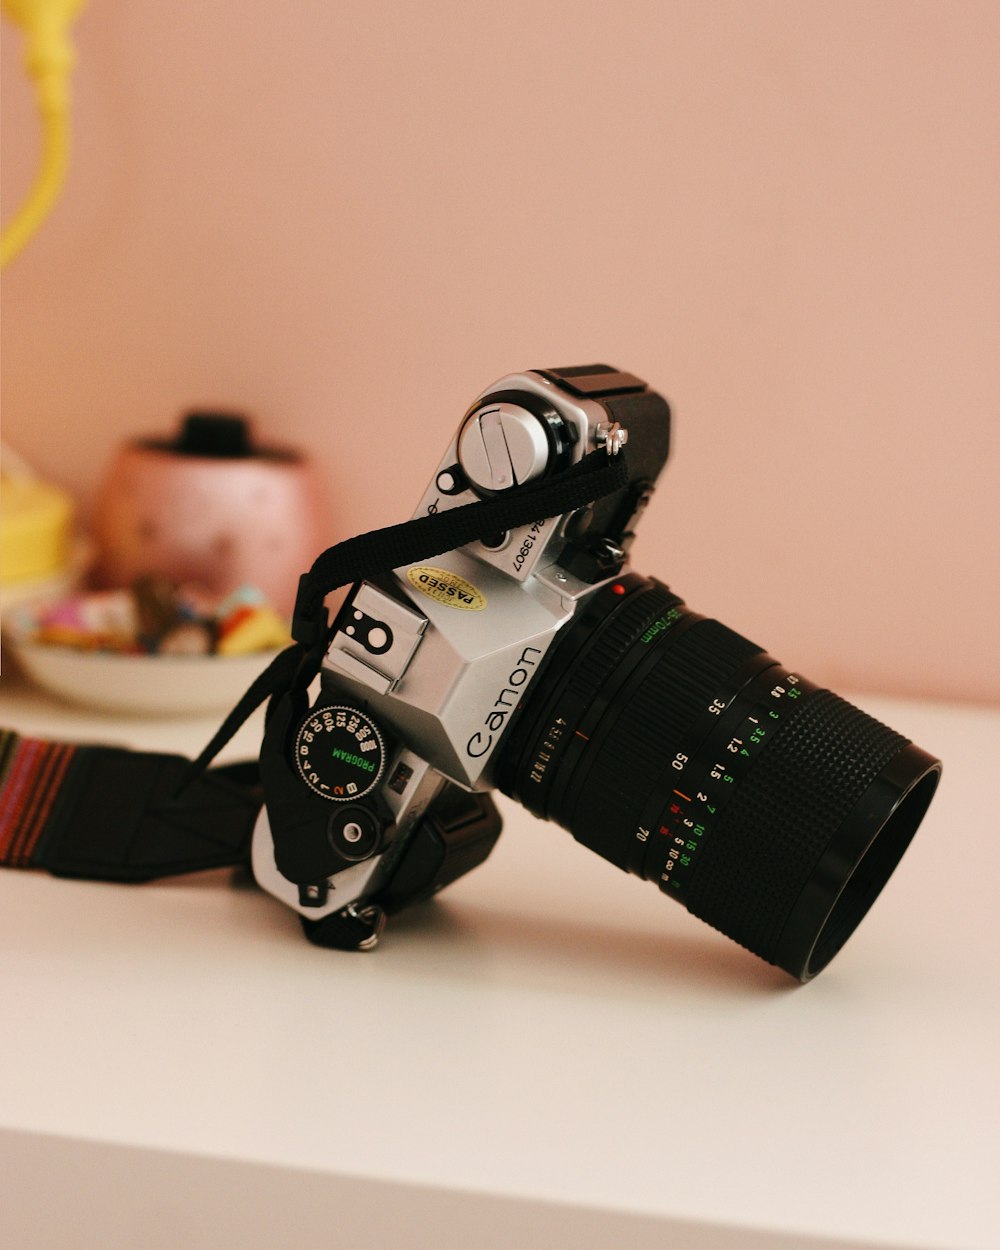 black and silver Canon DSLR camera